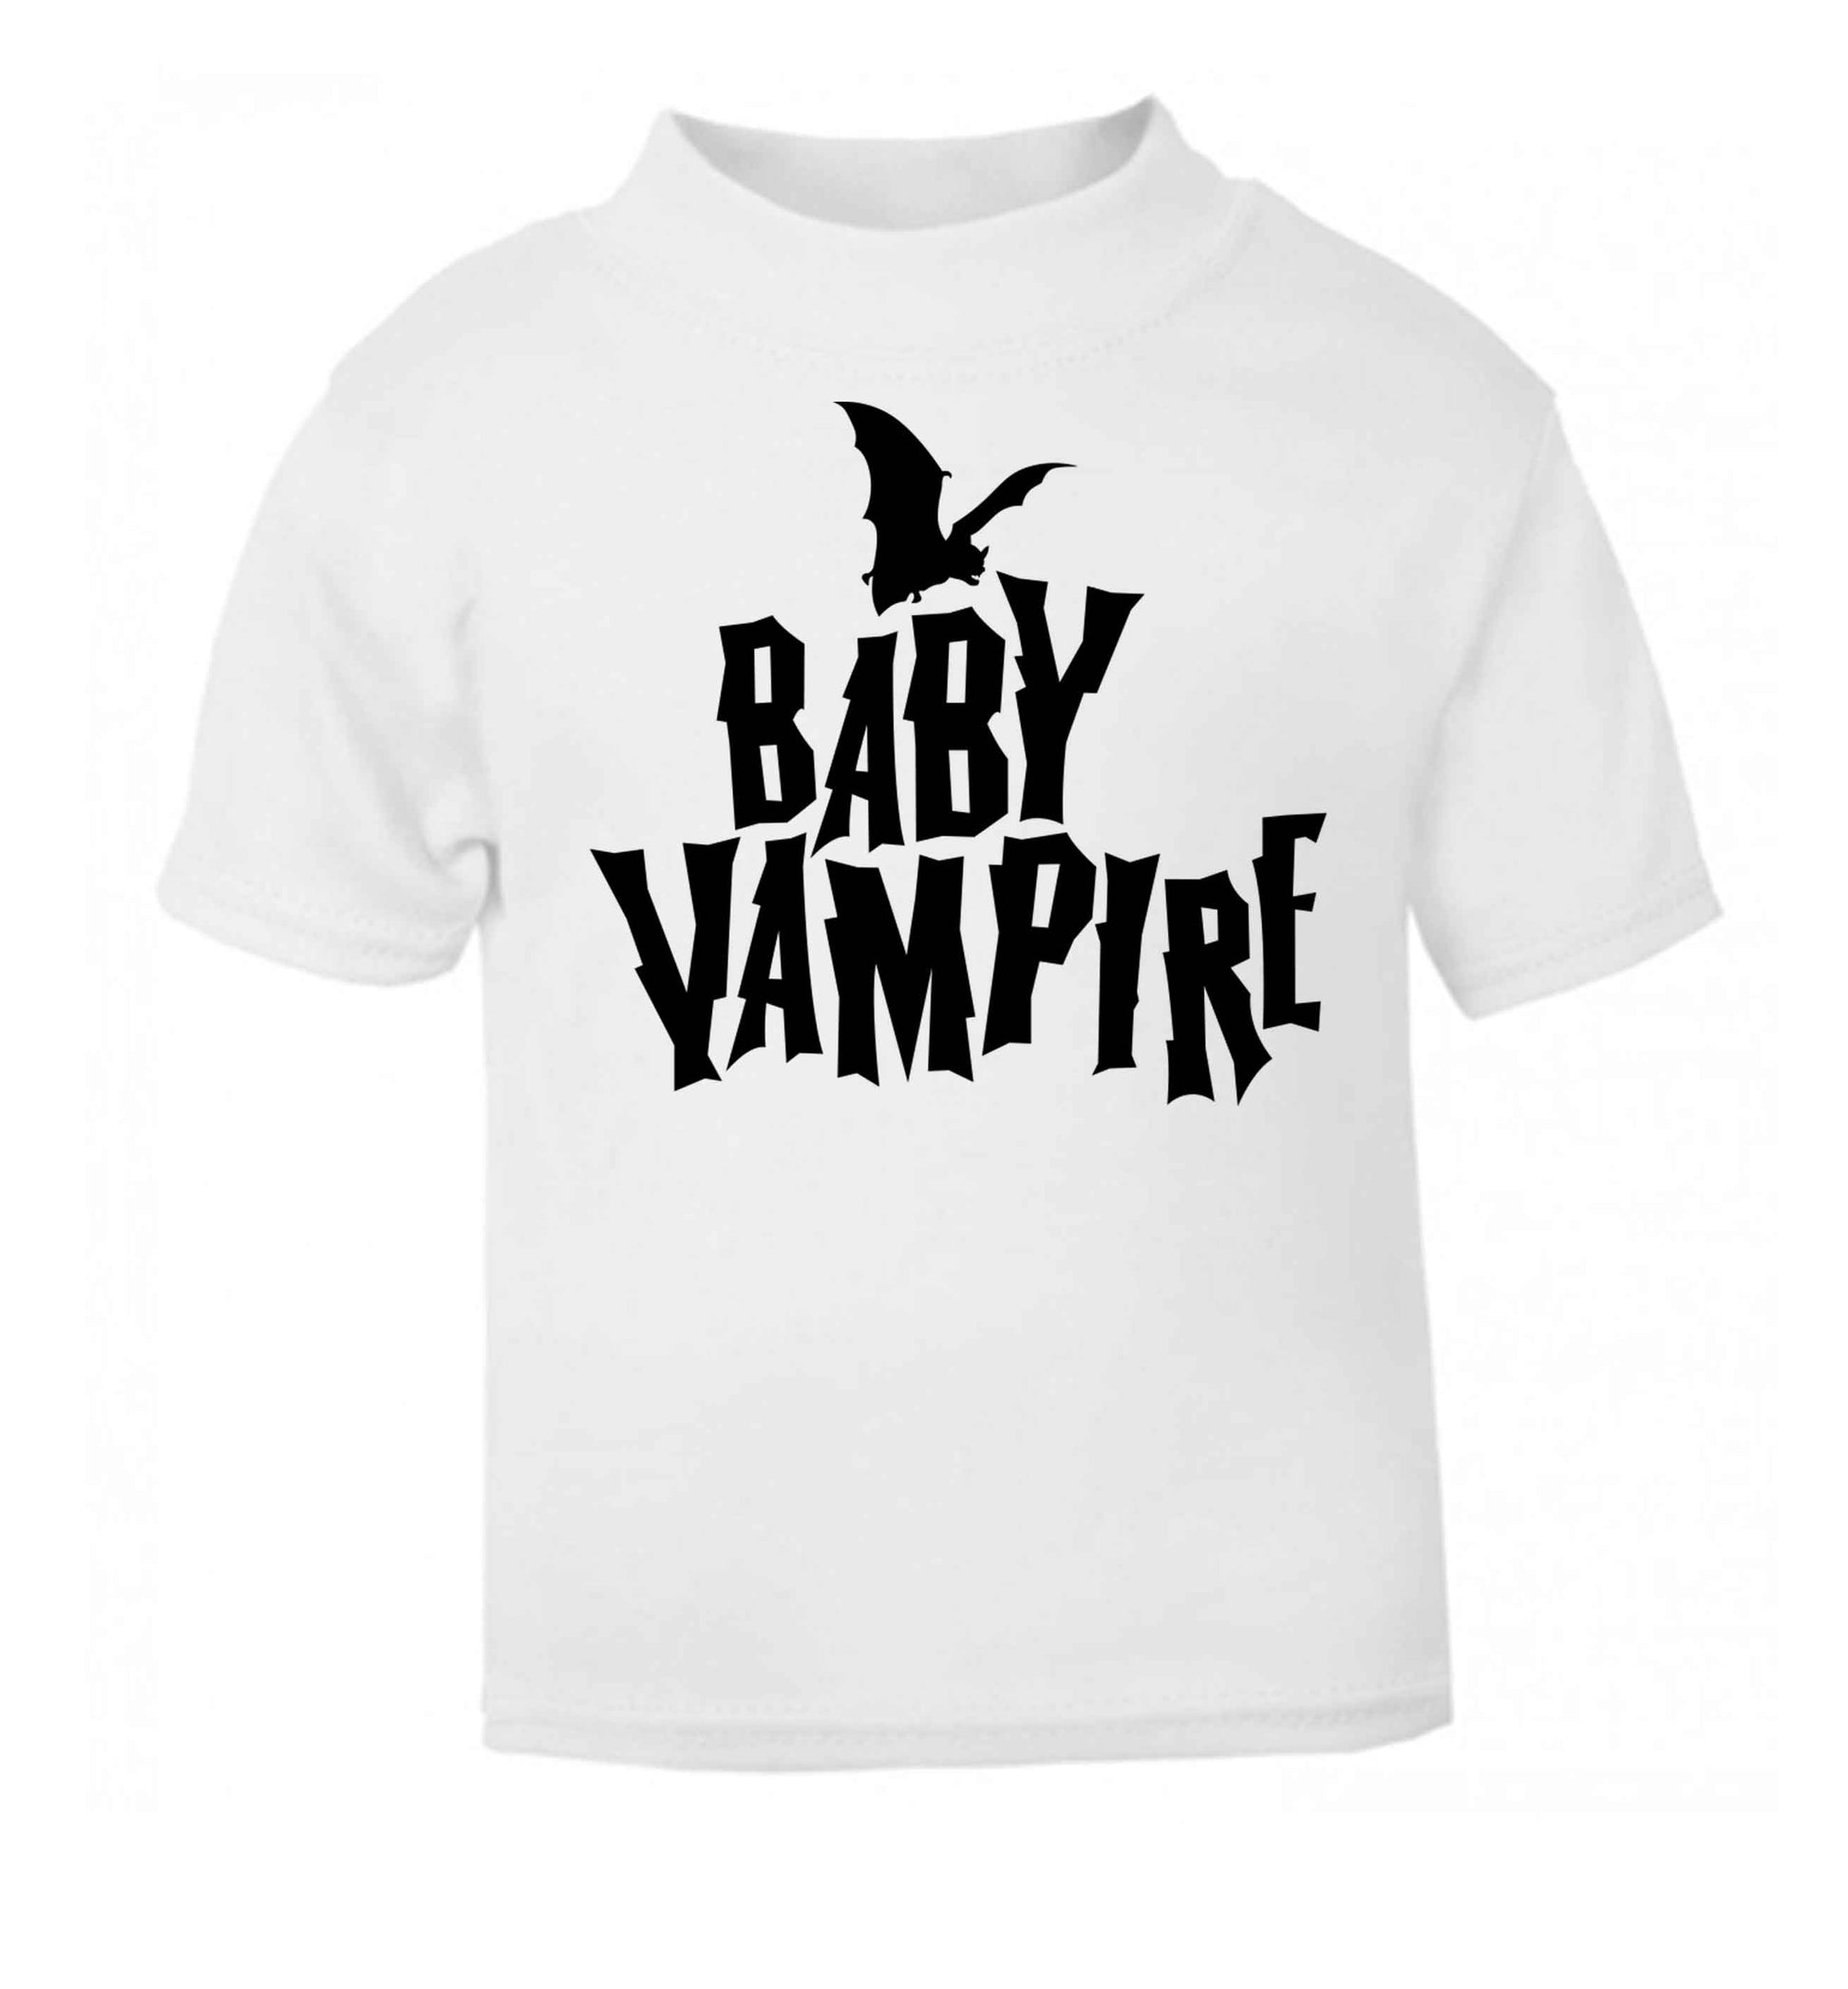 Baby vampire white baby toddler Tshirt 2 Years